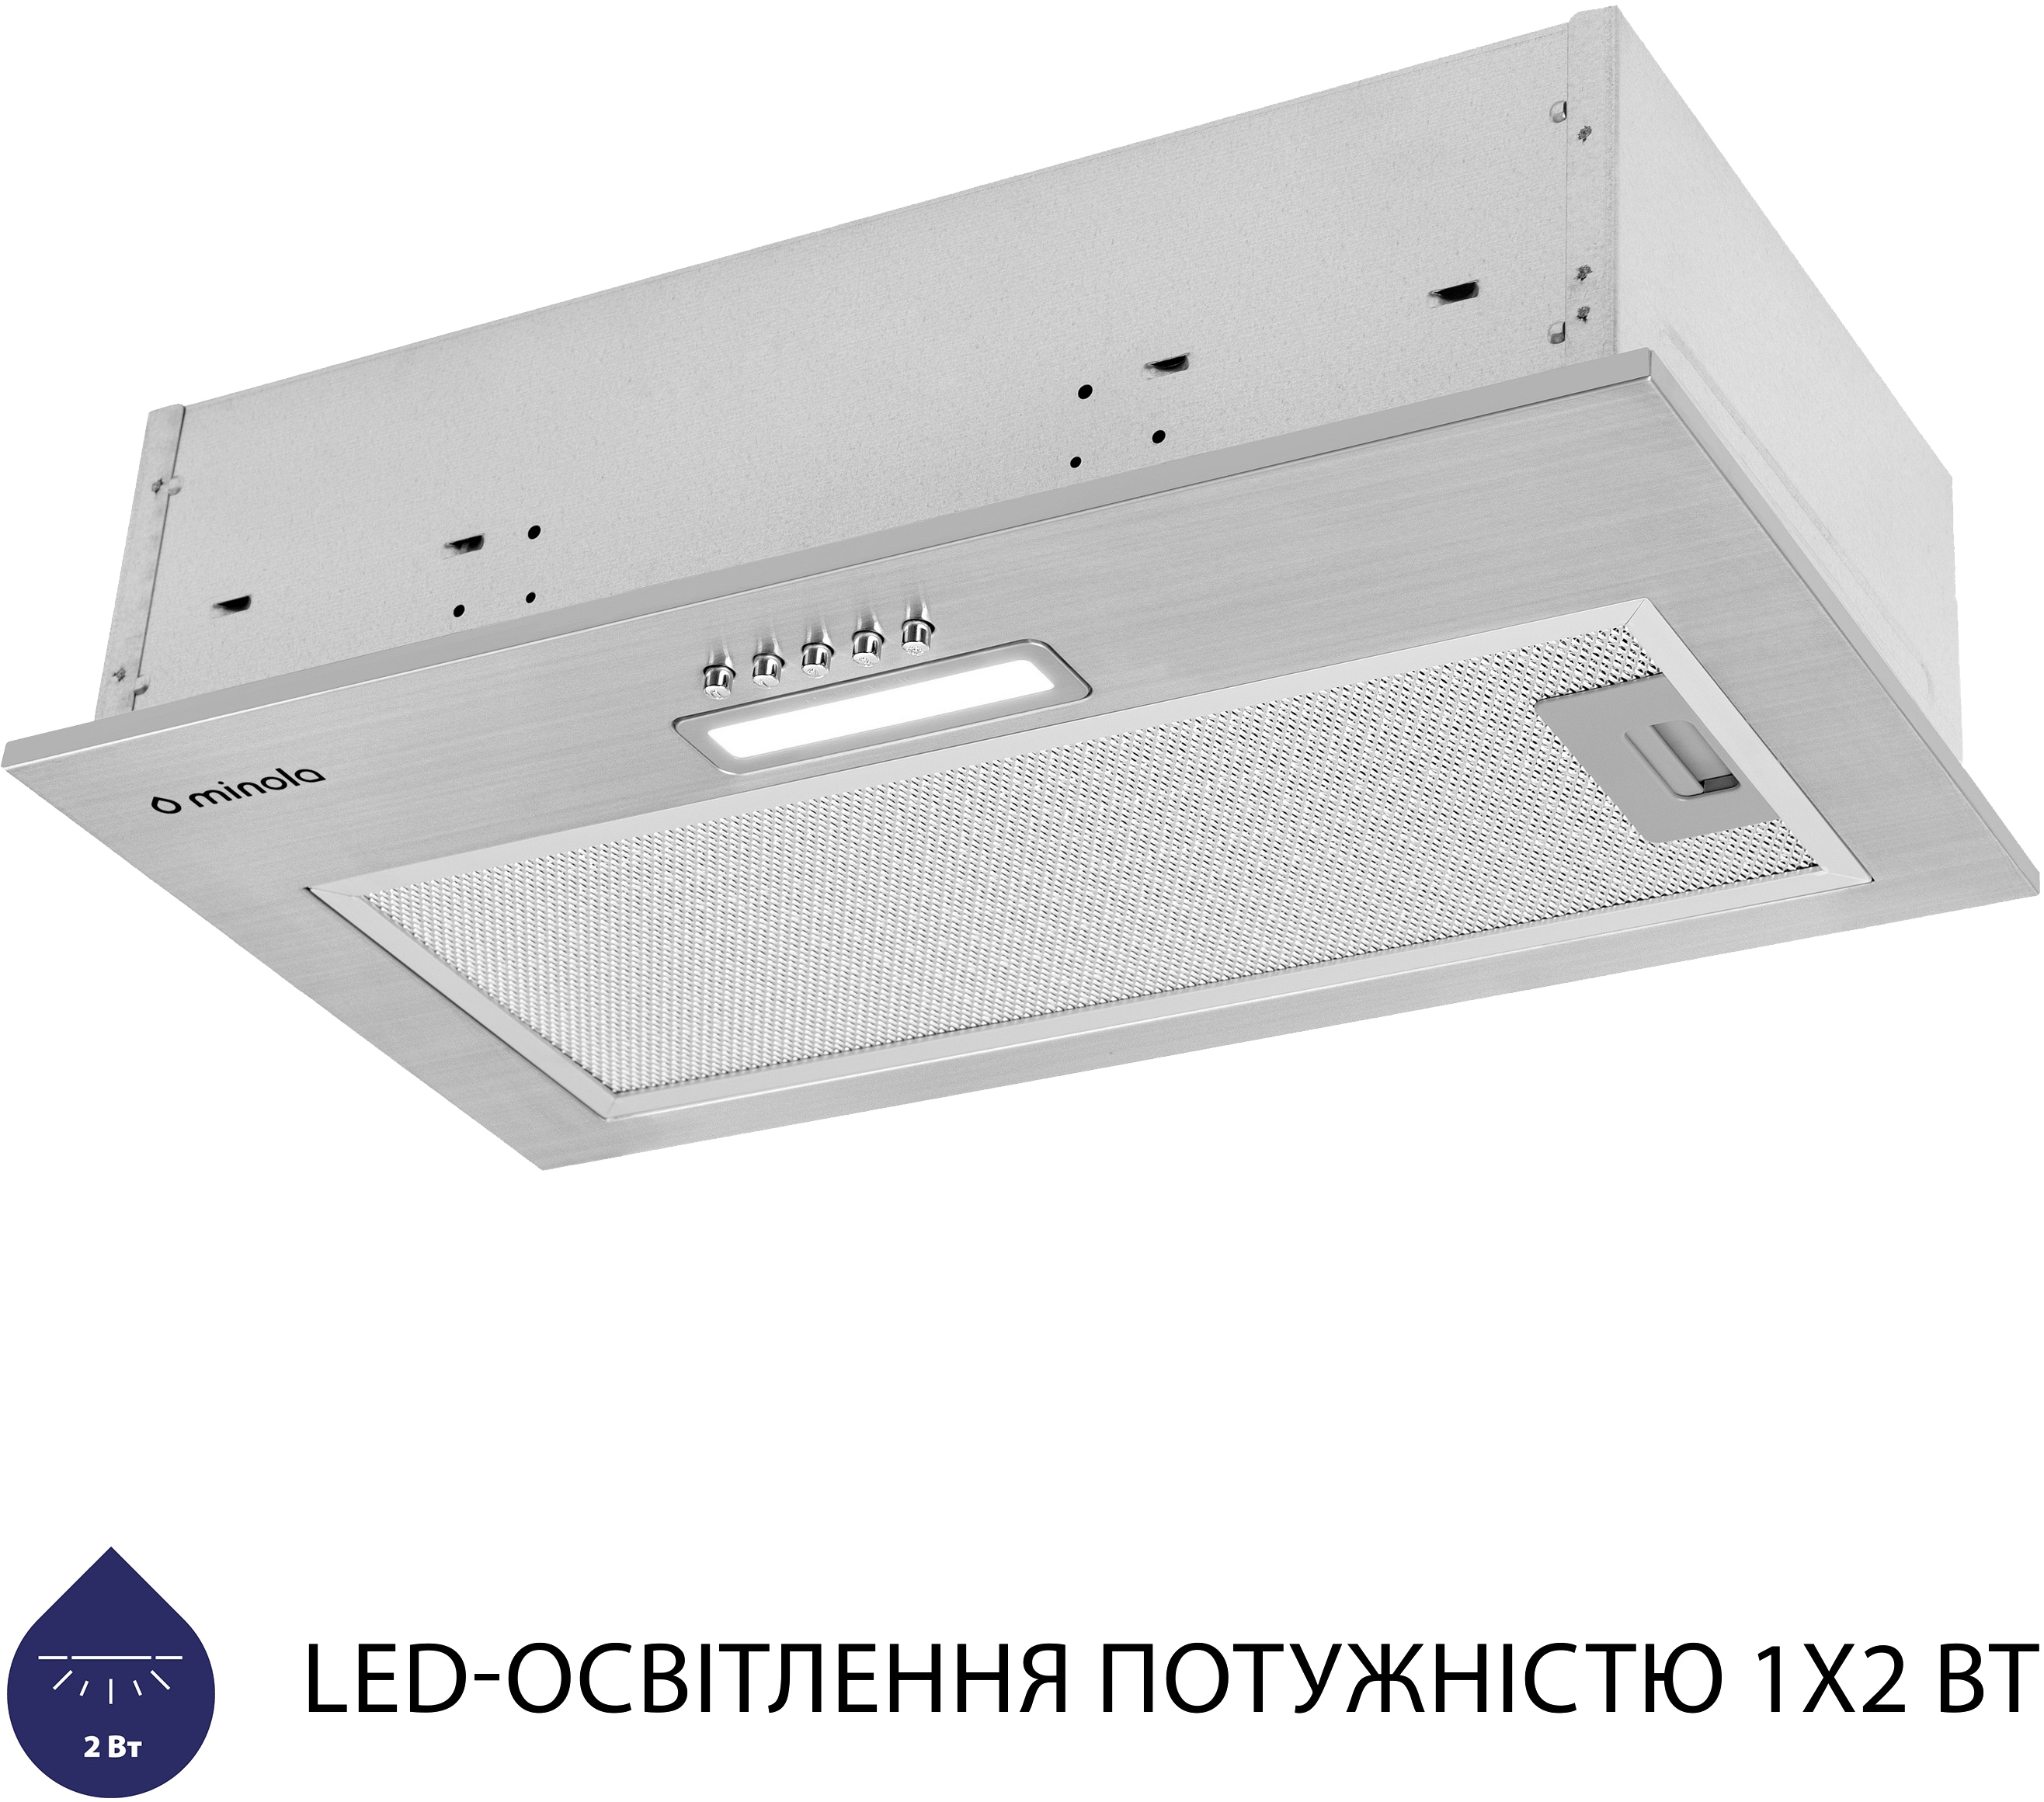 продаём Minola HBI 5025 I LED в Украине - фото 4